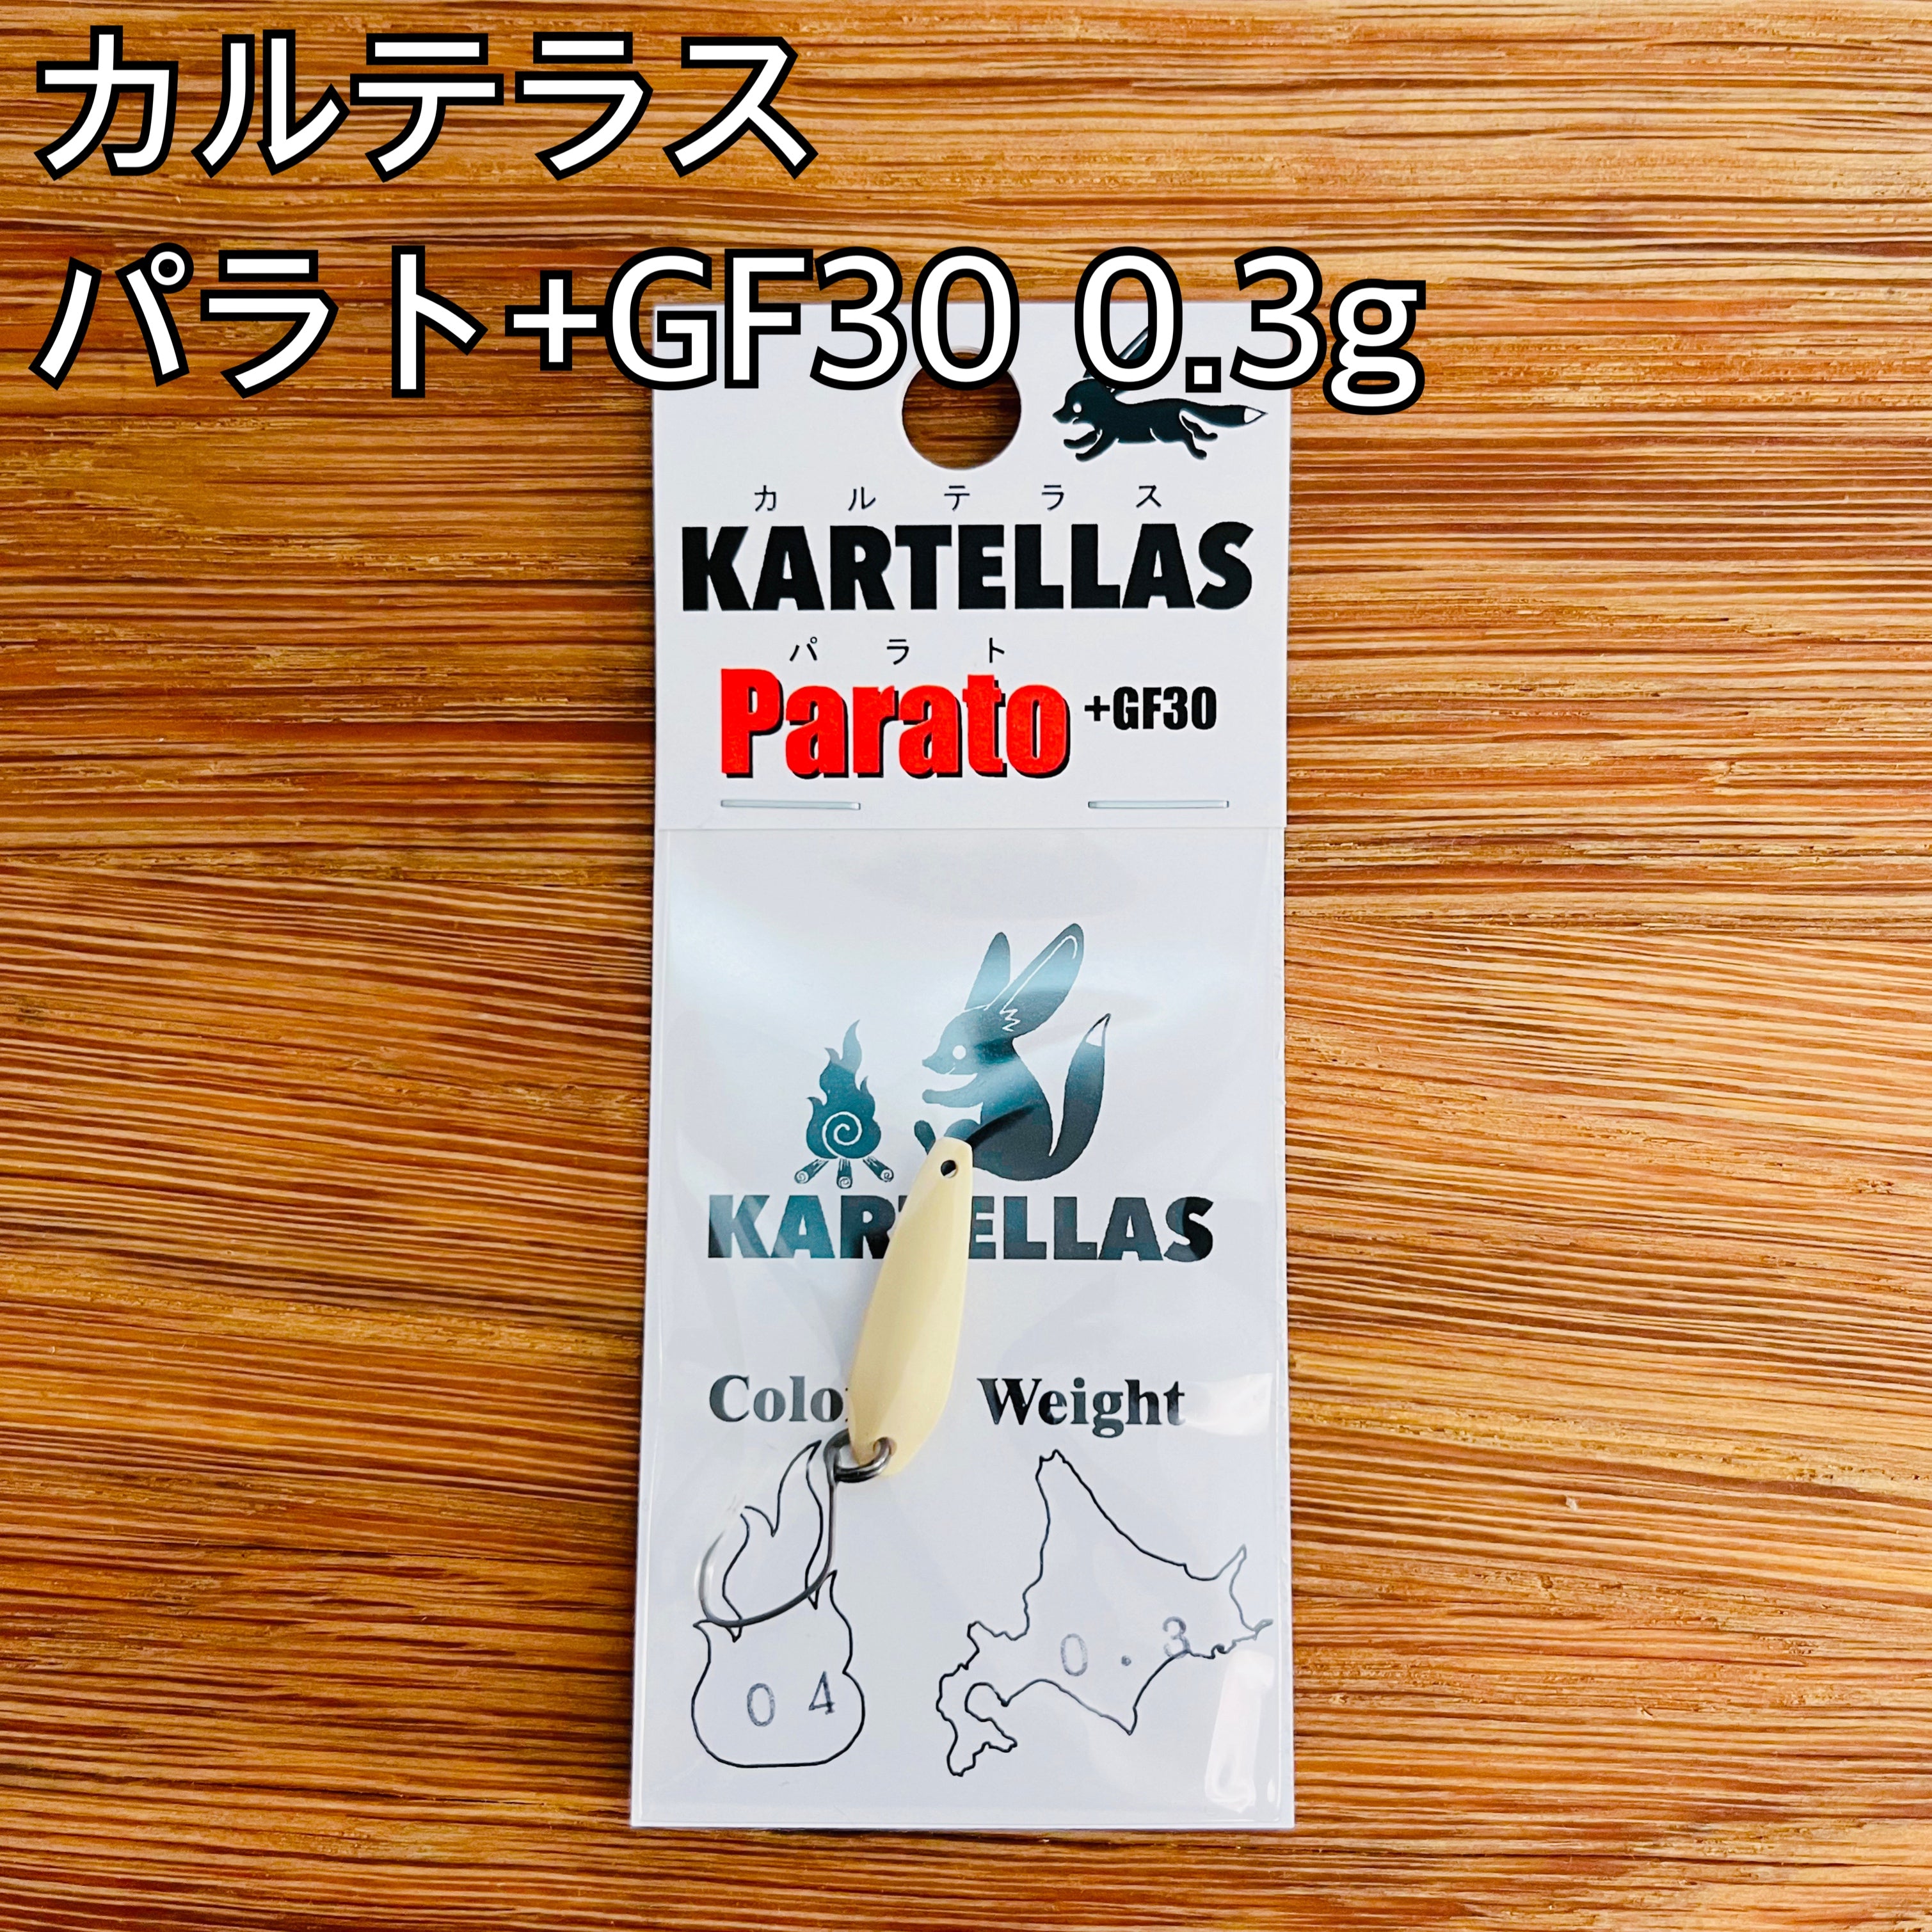 カルテラス パラト +GF30 0.3g / KARTELLAS Parato +GF30 0.3g_Fish Hook